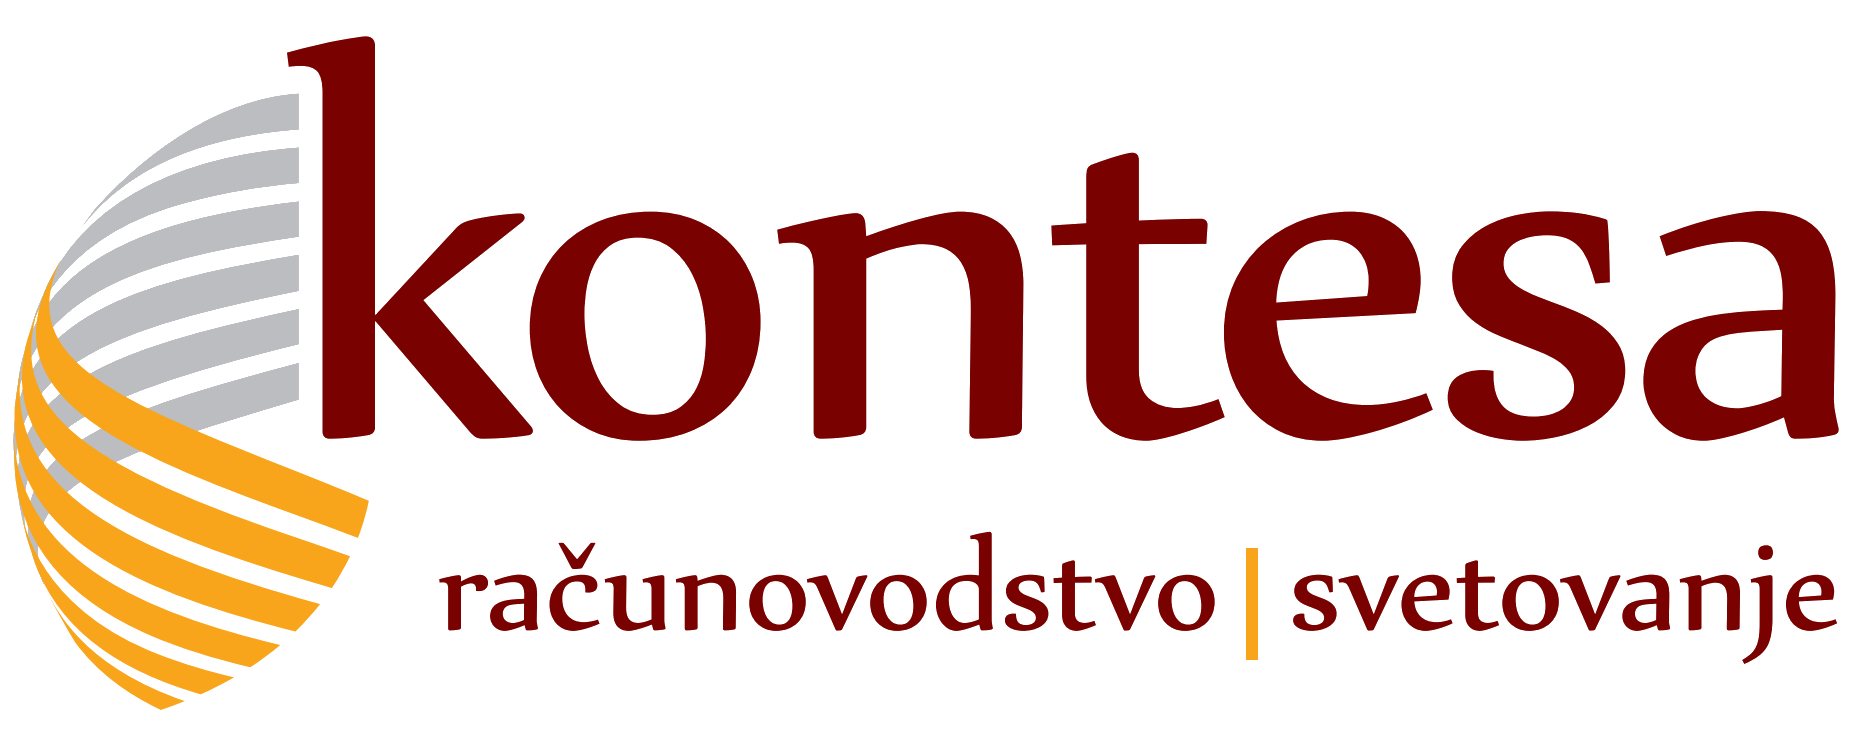 logo-Kontesa-2013.jpg